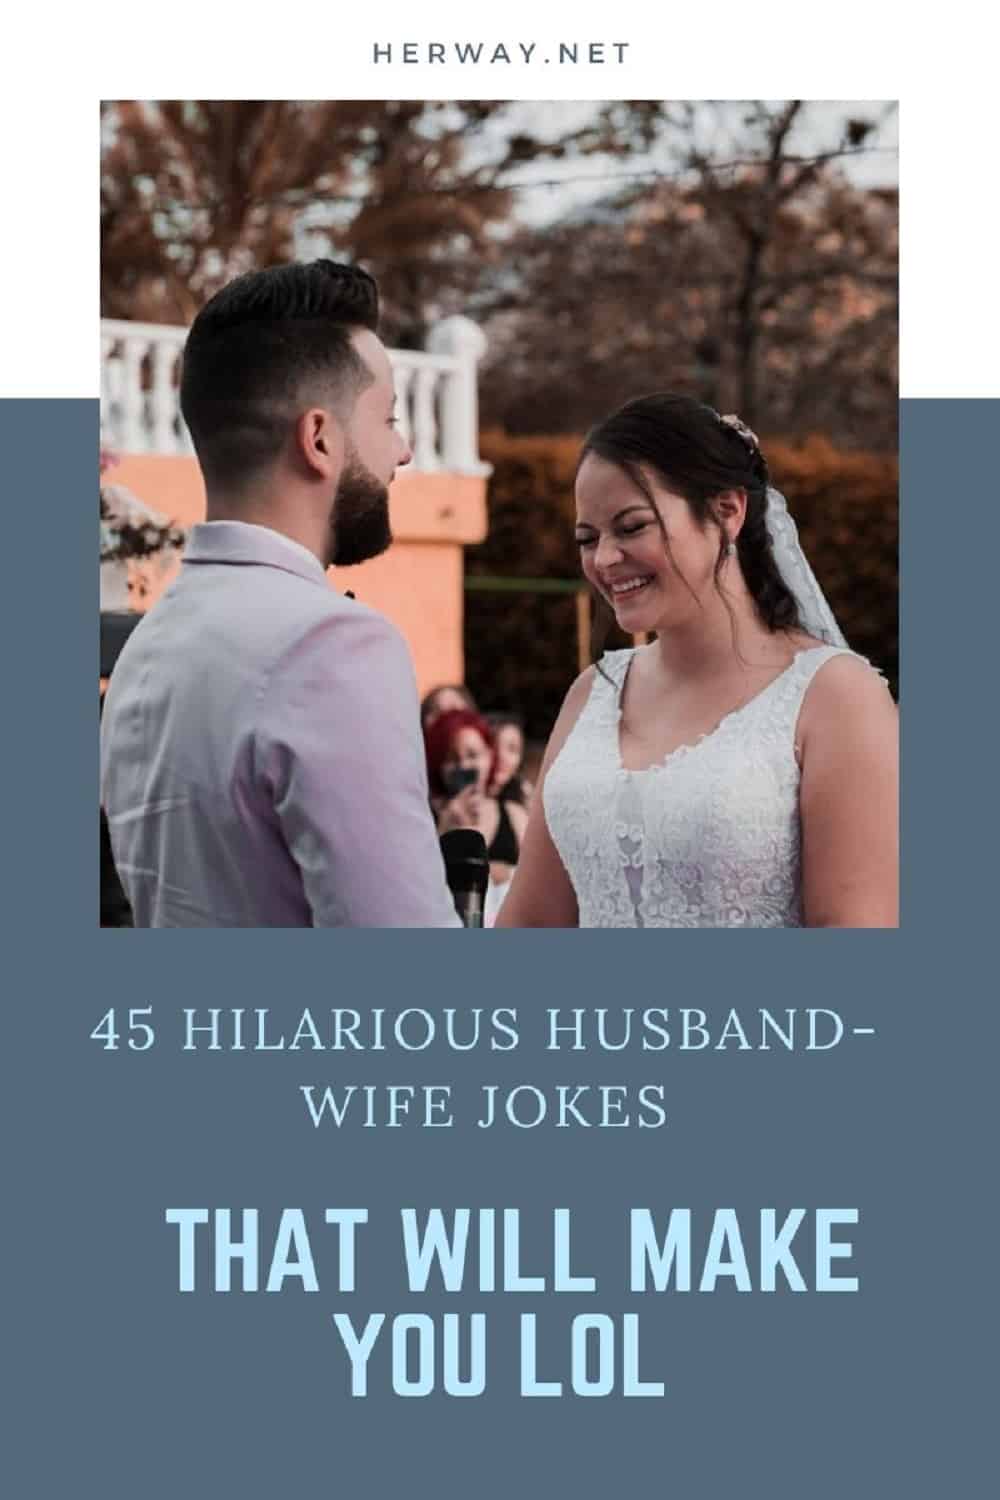 45 battute esilaranti su marito e moglie che vi faranno ridere Pinterest